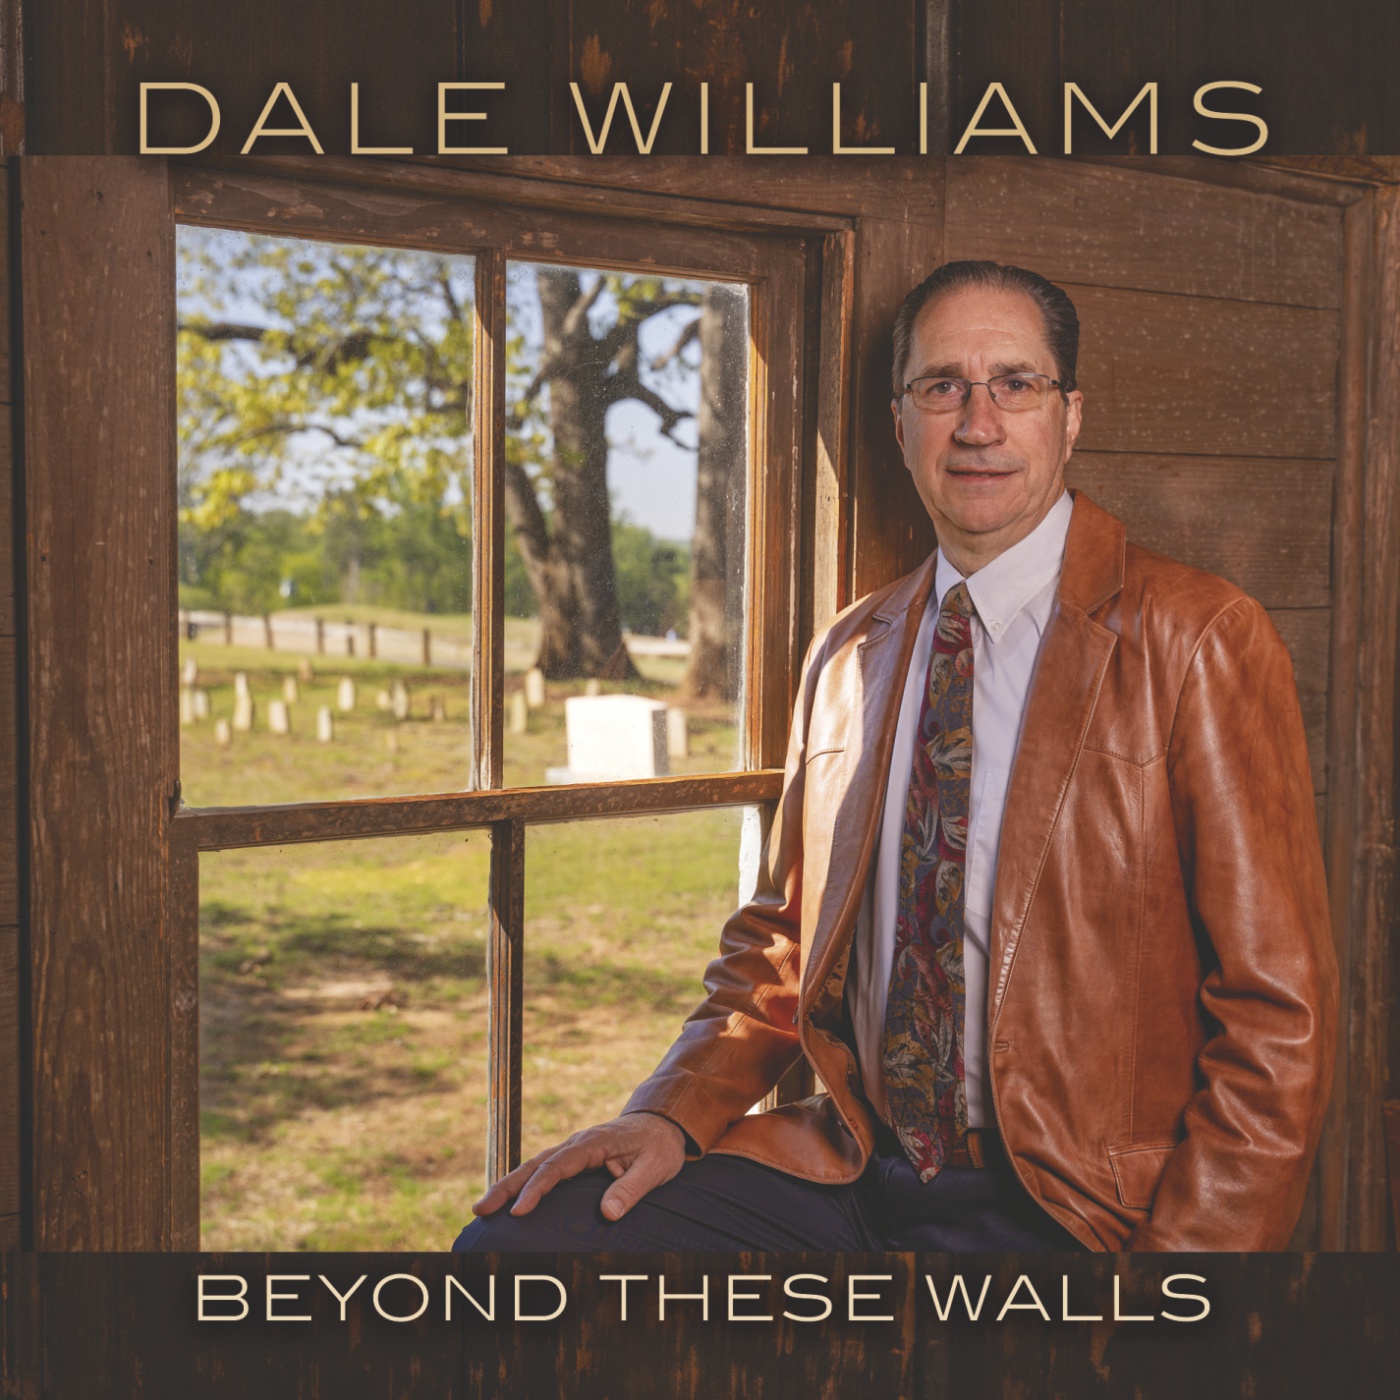 Dale Williams